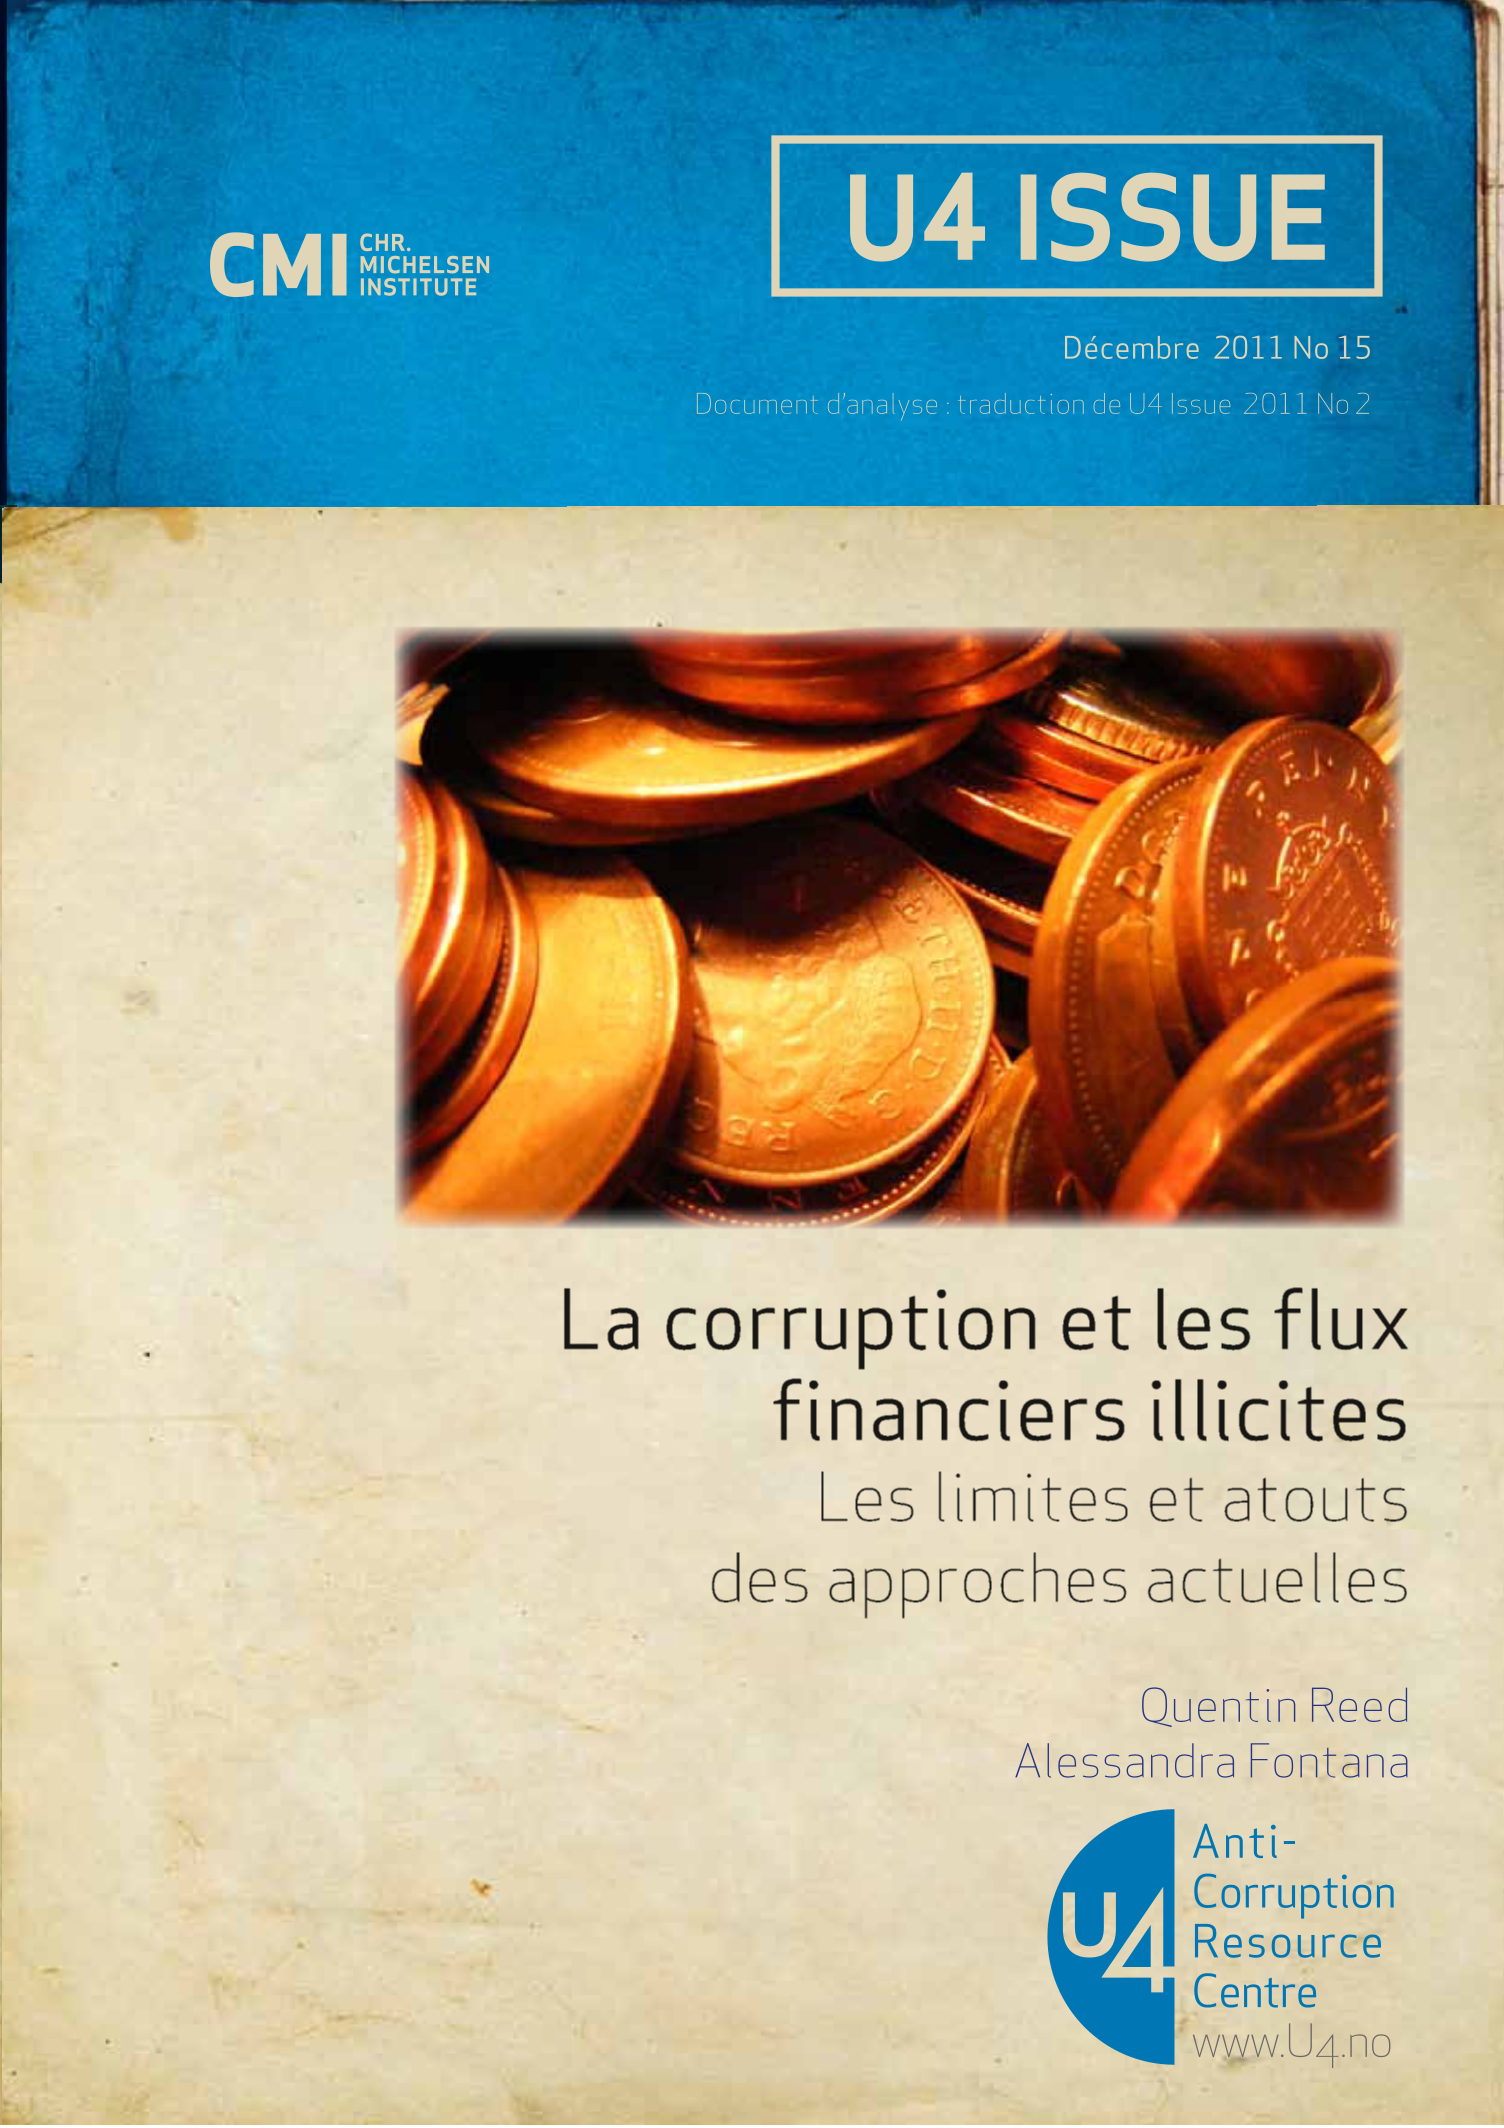 La corruption et les flux financiers illicites: Les limites et atouts des approches actuelles